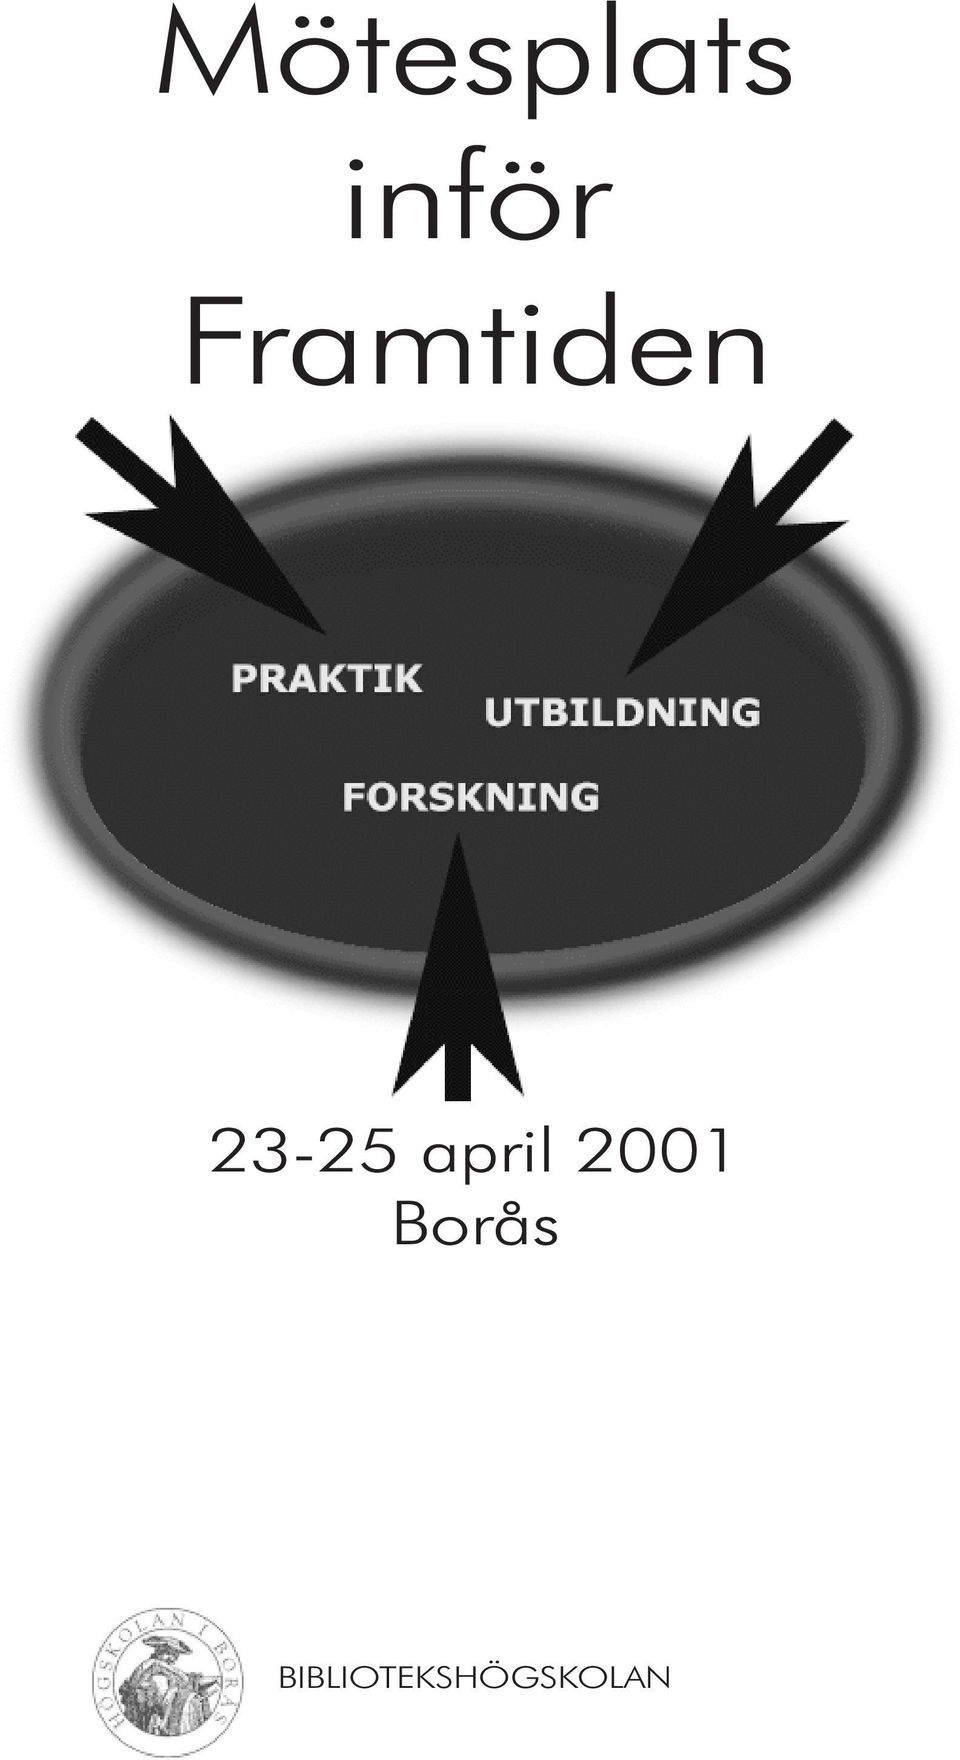 april 2001 Borås